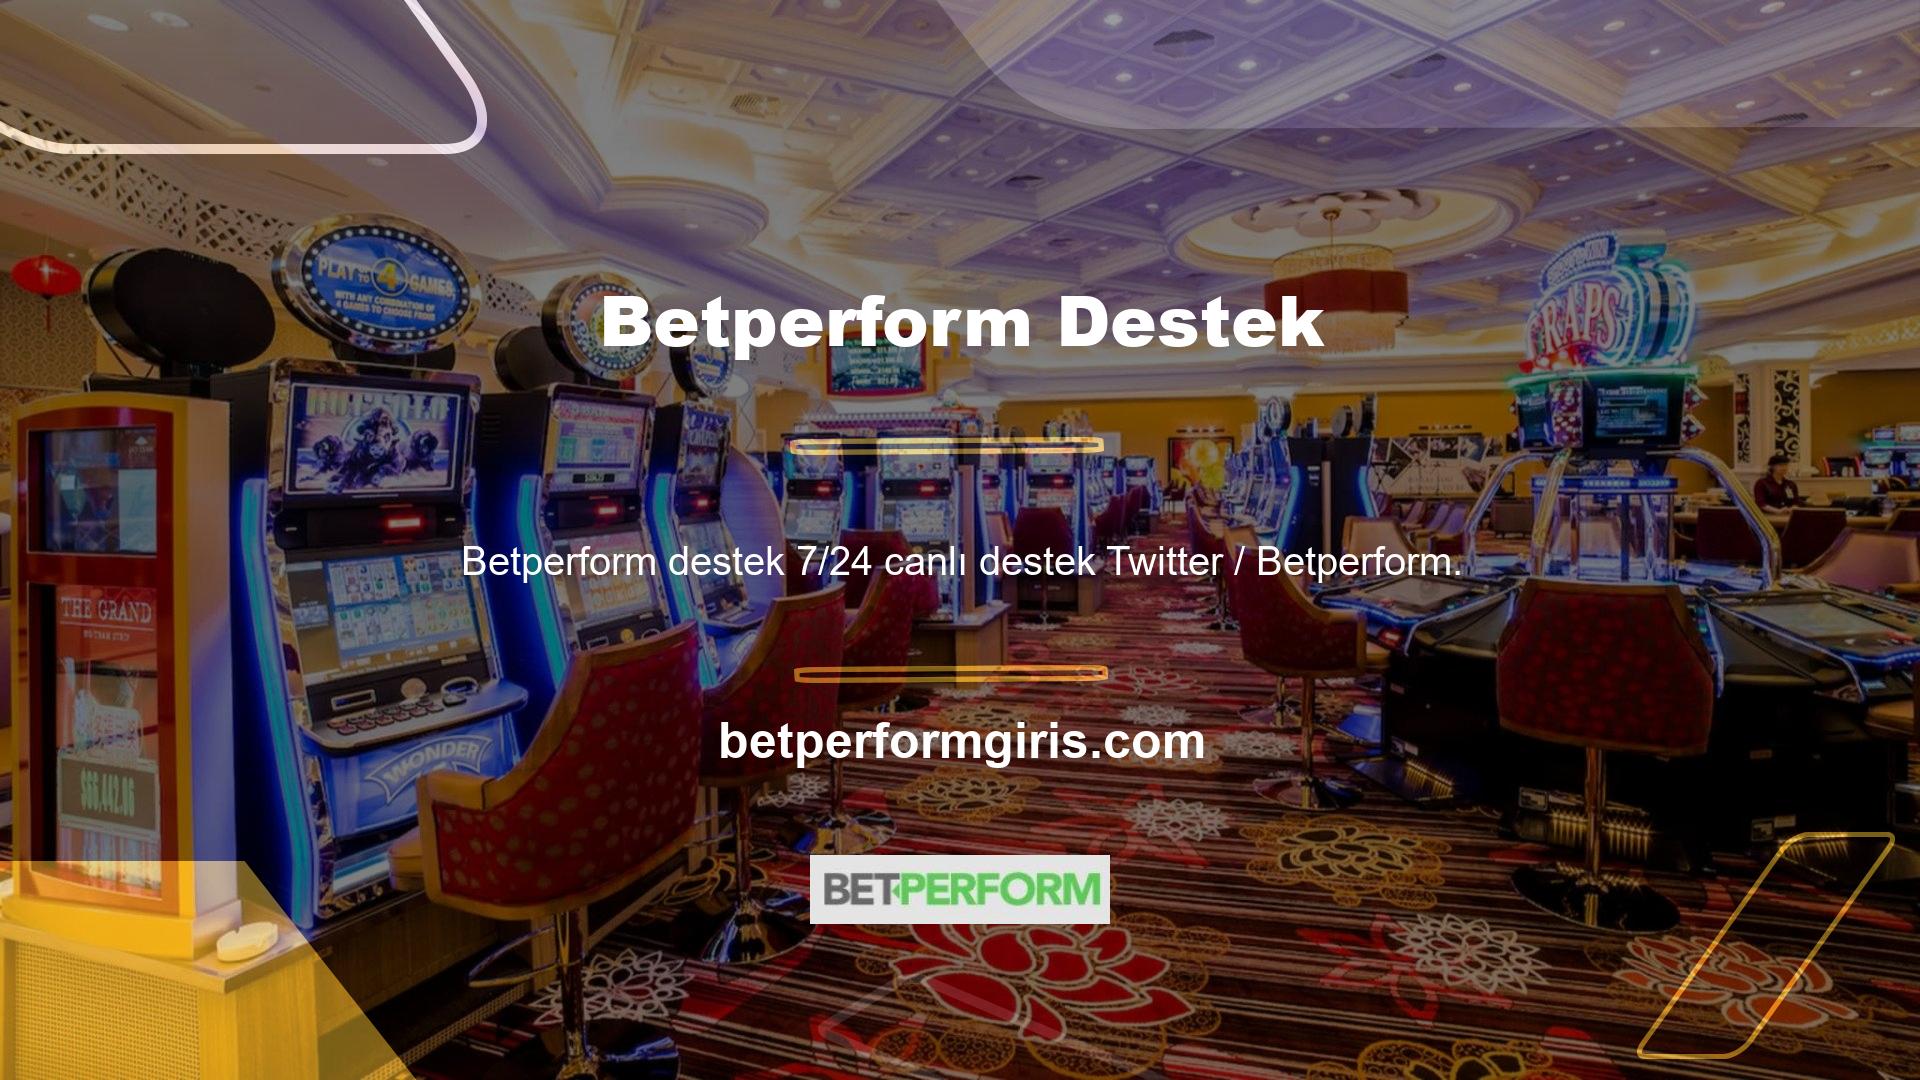 com tarafından sağlanmaktadır Betperform Mesaj Hattı Betperform müşteri desteği çeşitli iletişim kanallarını içerir